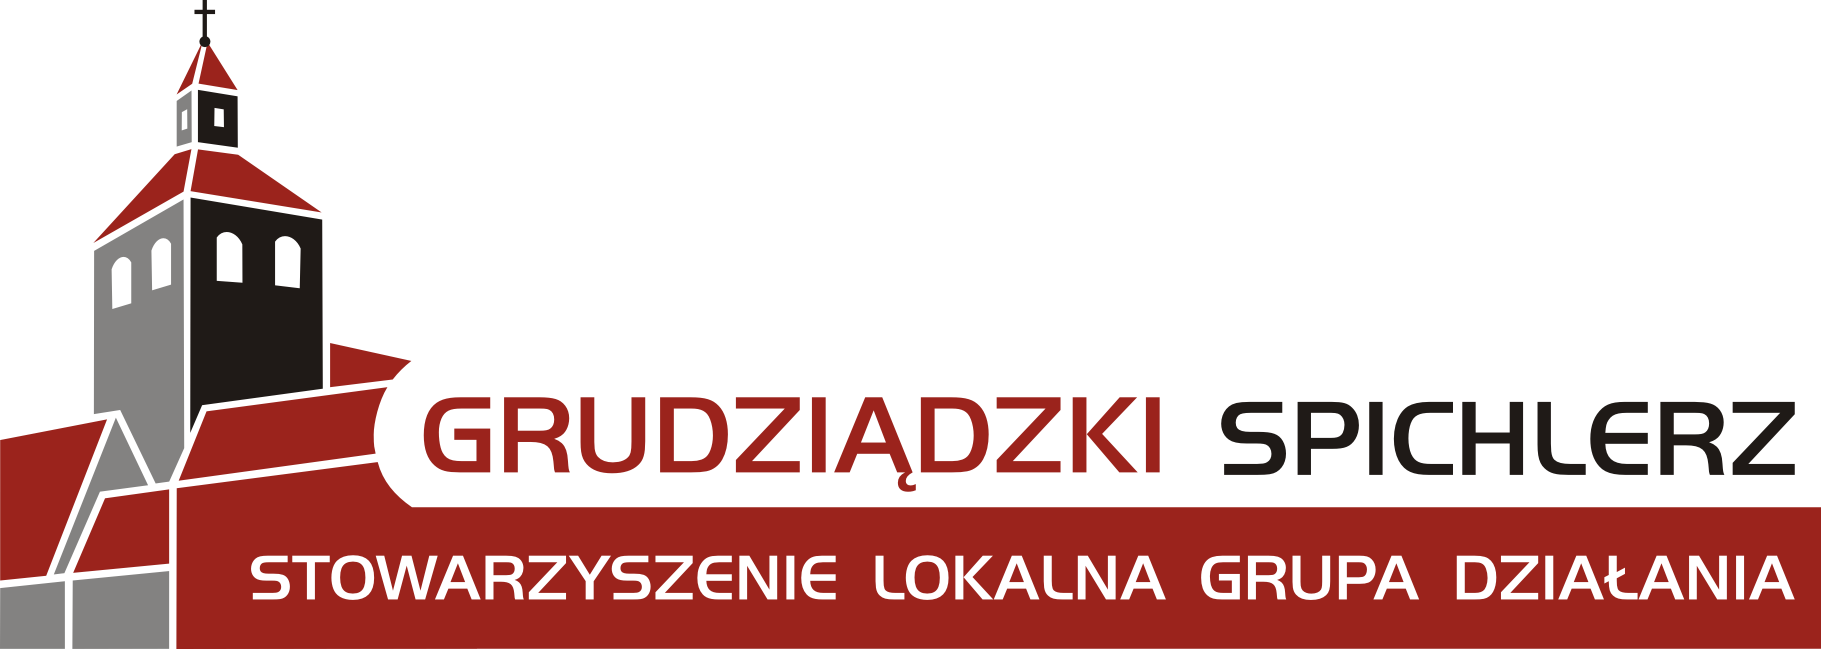 Grudziądzki Spichlerz - logo kolor